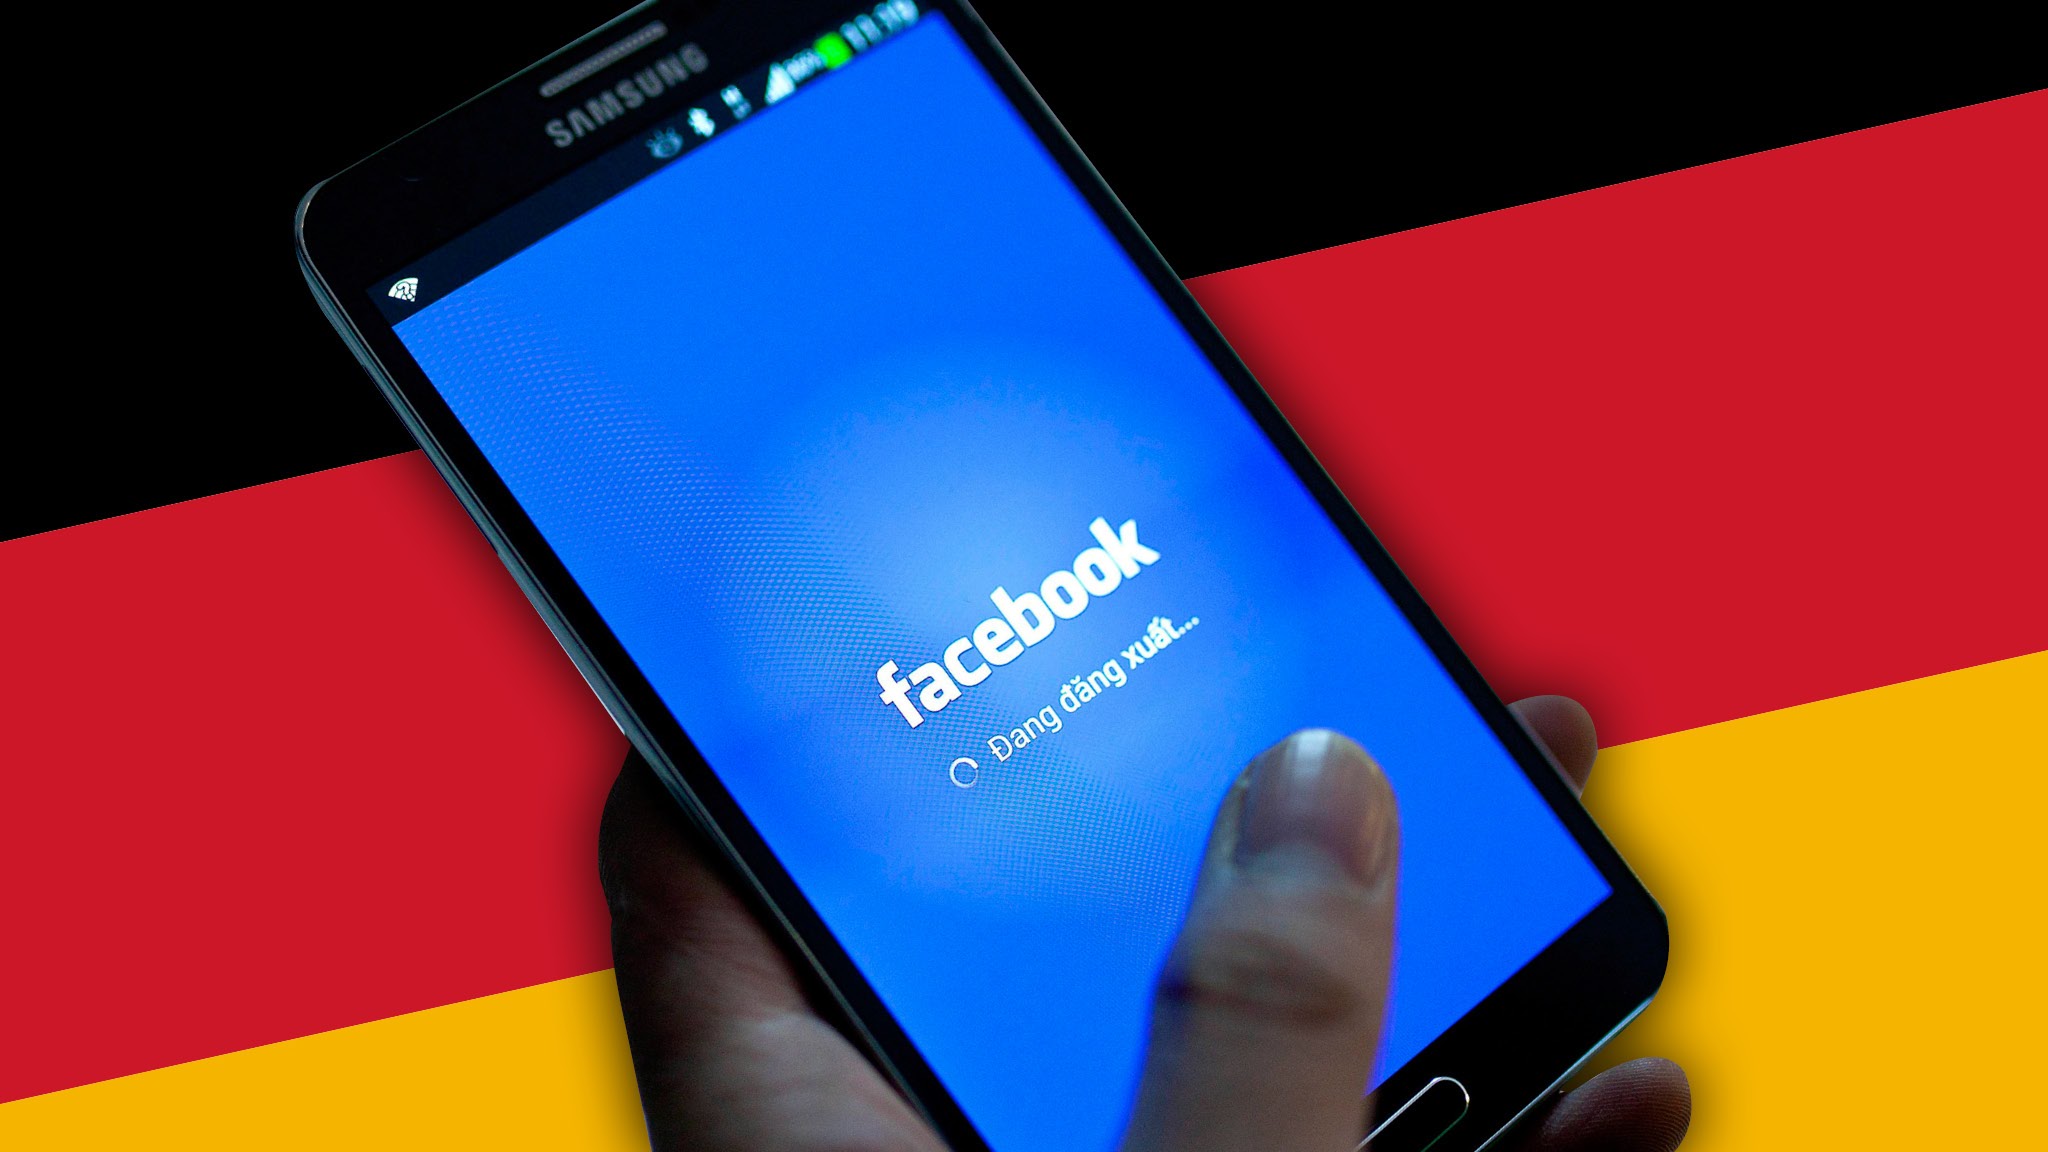 Almanya’dan Facebook’a milyon dolarlık ceza